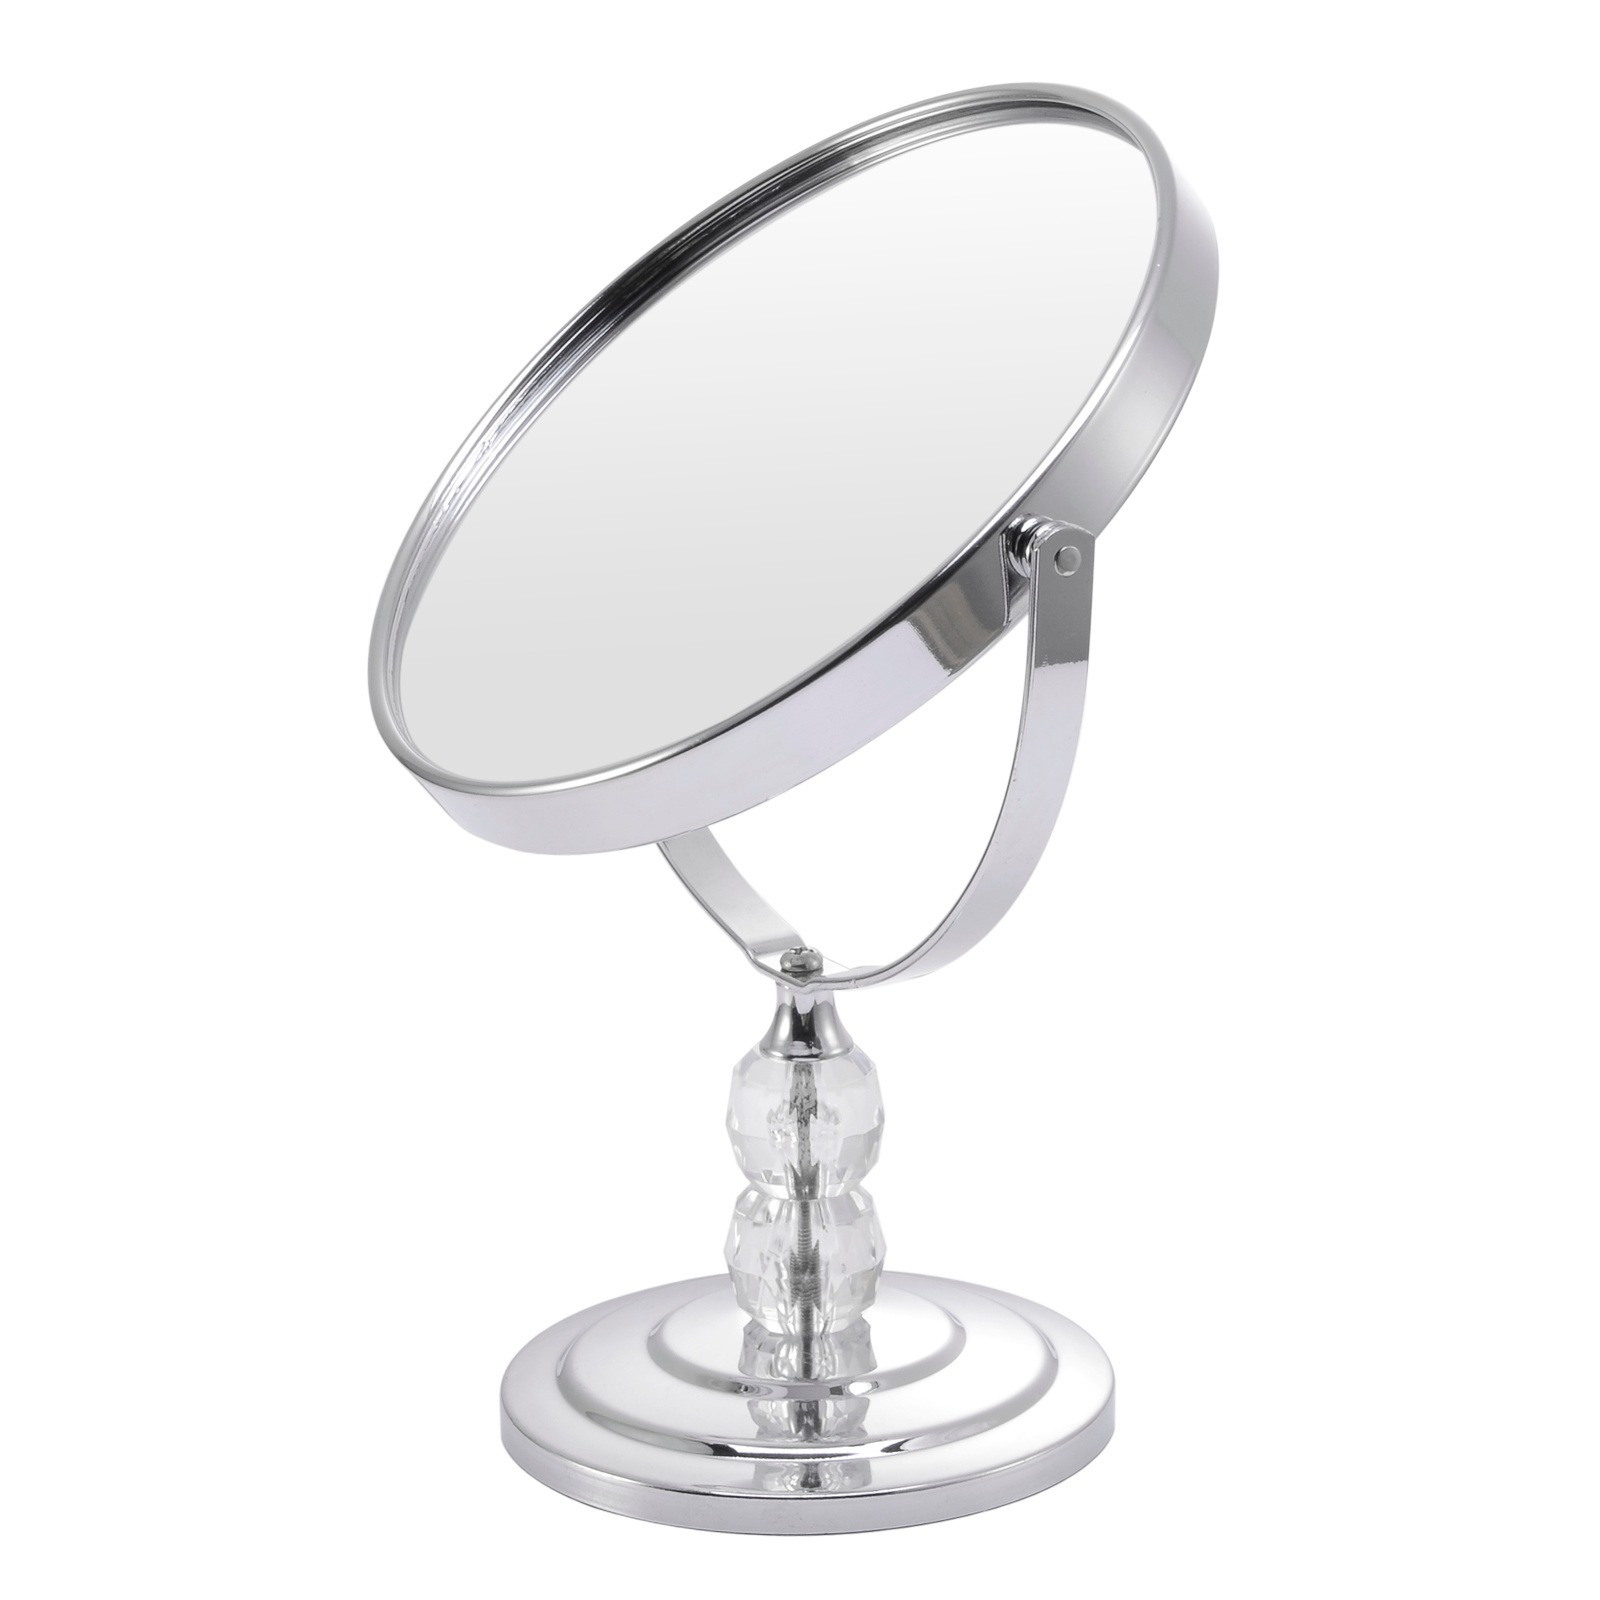 厂家定做双面可旋转美容化妆镜台式金属镜子桌面1:2放大功能梳妆镜